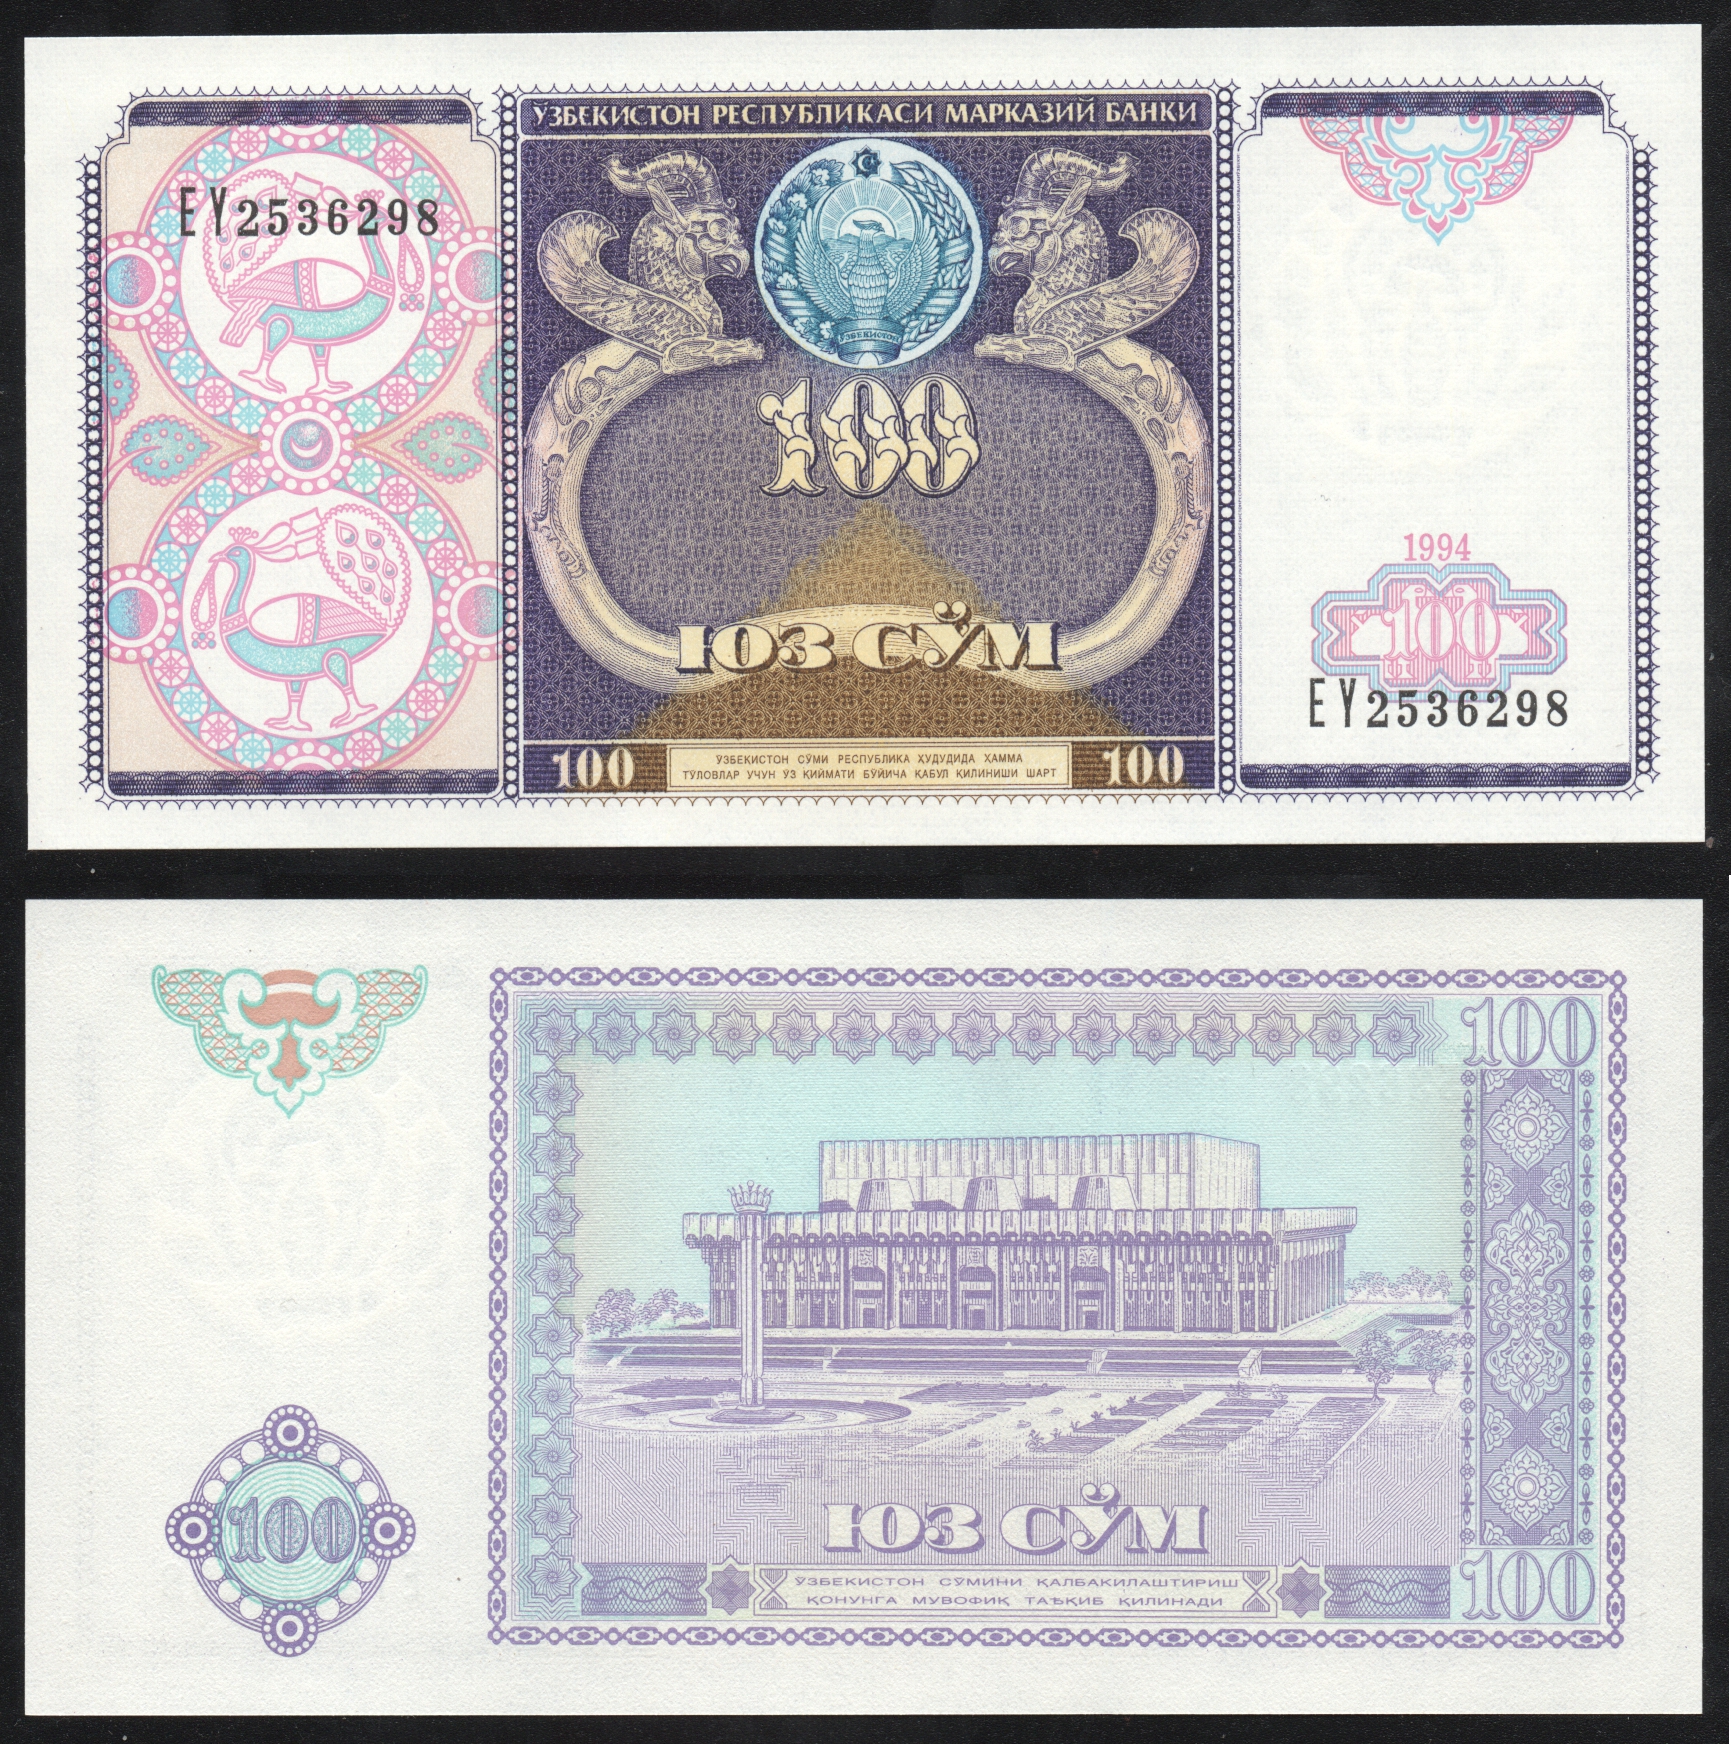 Сум купюра. Банкноты Узбекистана 50, 100 сум 1994г. 100 Сум Узбекистан банкнота. 100 So'm Узбекистан. Купюра 100 сум Узбекистан.